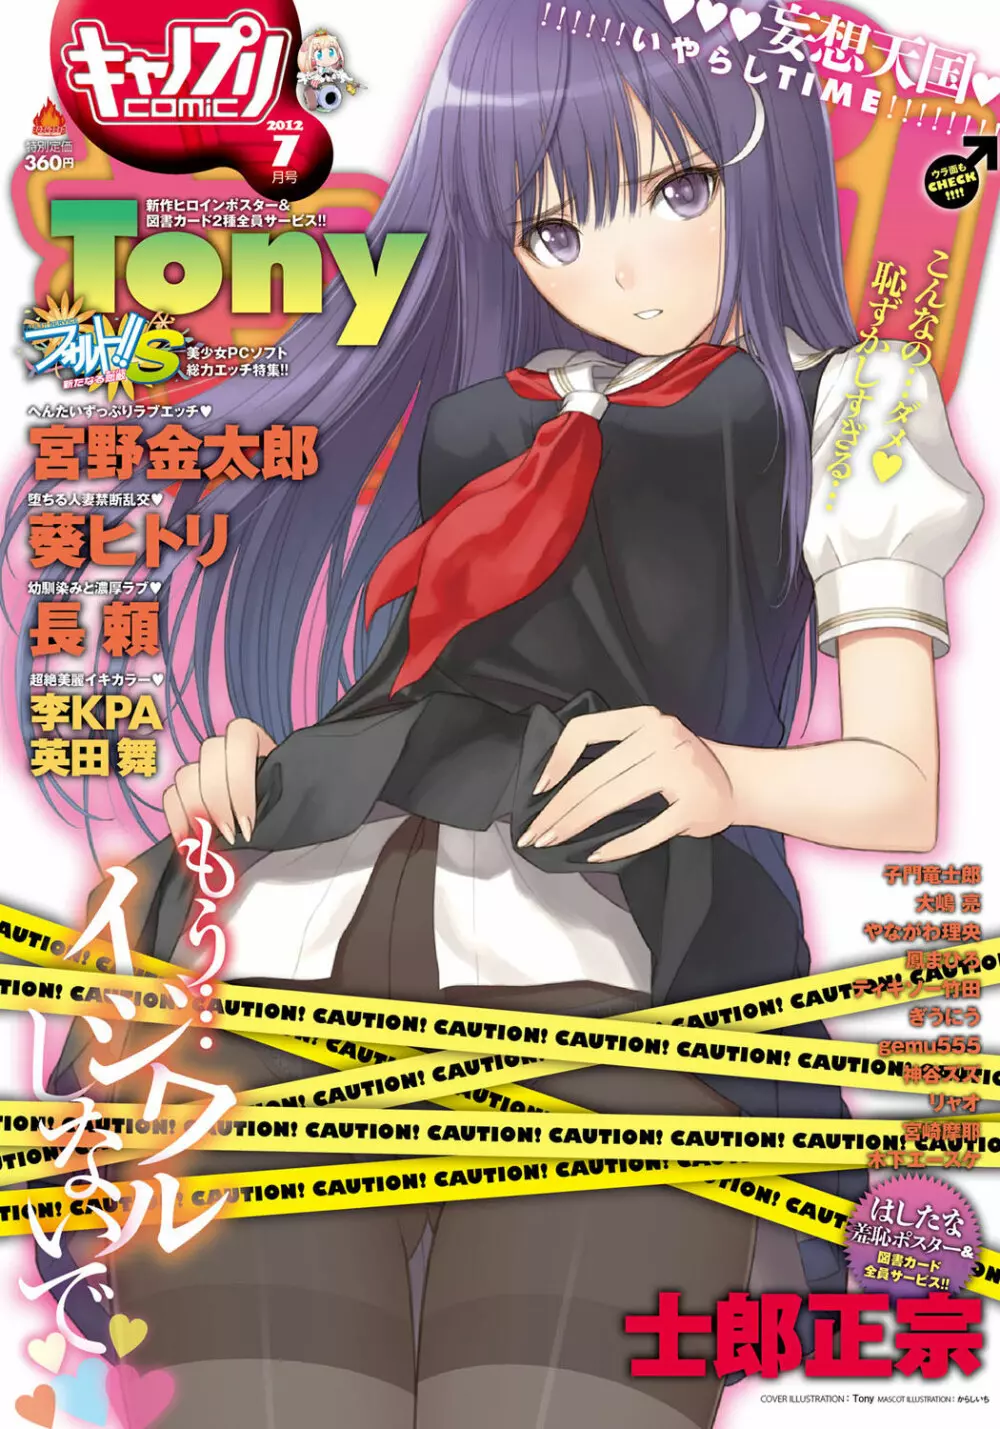 キャノプリ comic 2012年7月号 Vol.21 1ページ